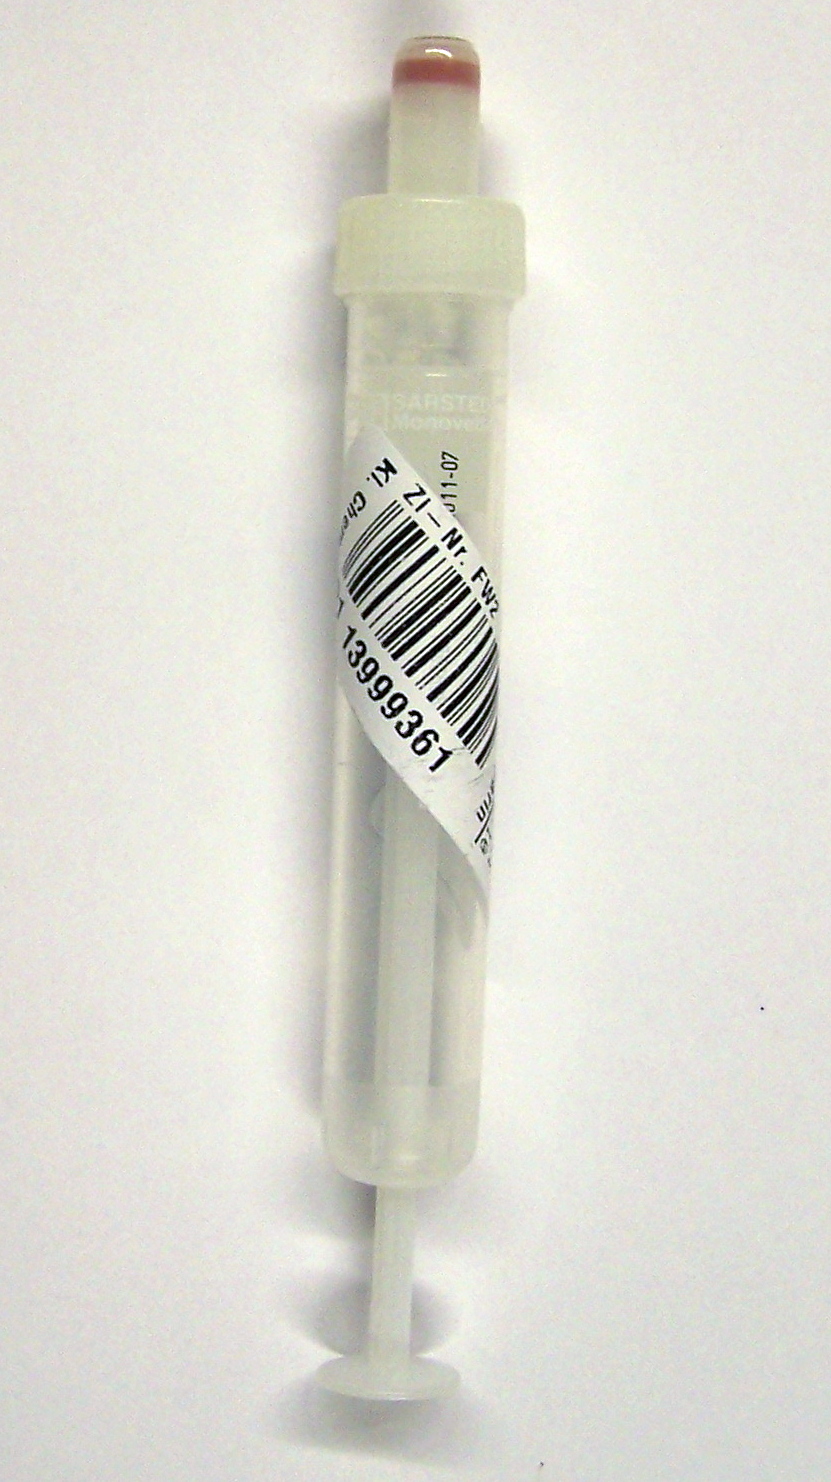 Bild einer Serum-Monovette die schräg mit dem Patientenetikett beklebt ist.